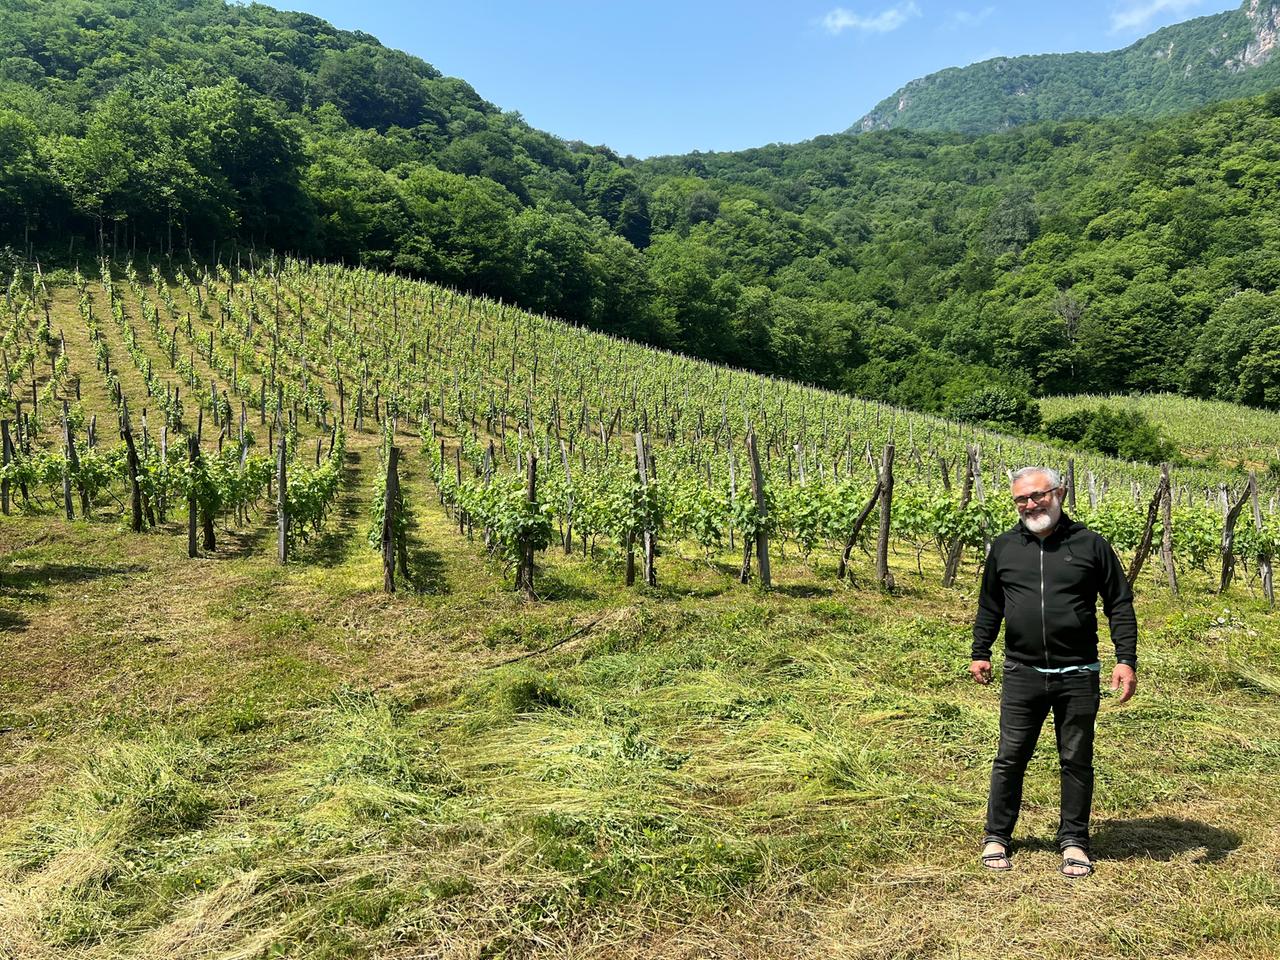 Der rundliche, kleine Weinbauer Paata steht in Georgien vor einem seiner Weinberge. Die Sonne strahlt. Er trägt schwarze Kleidung.